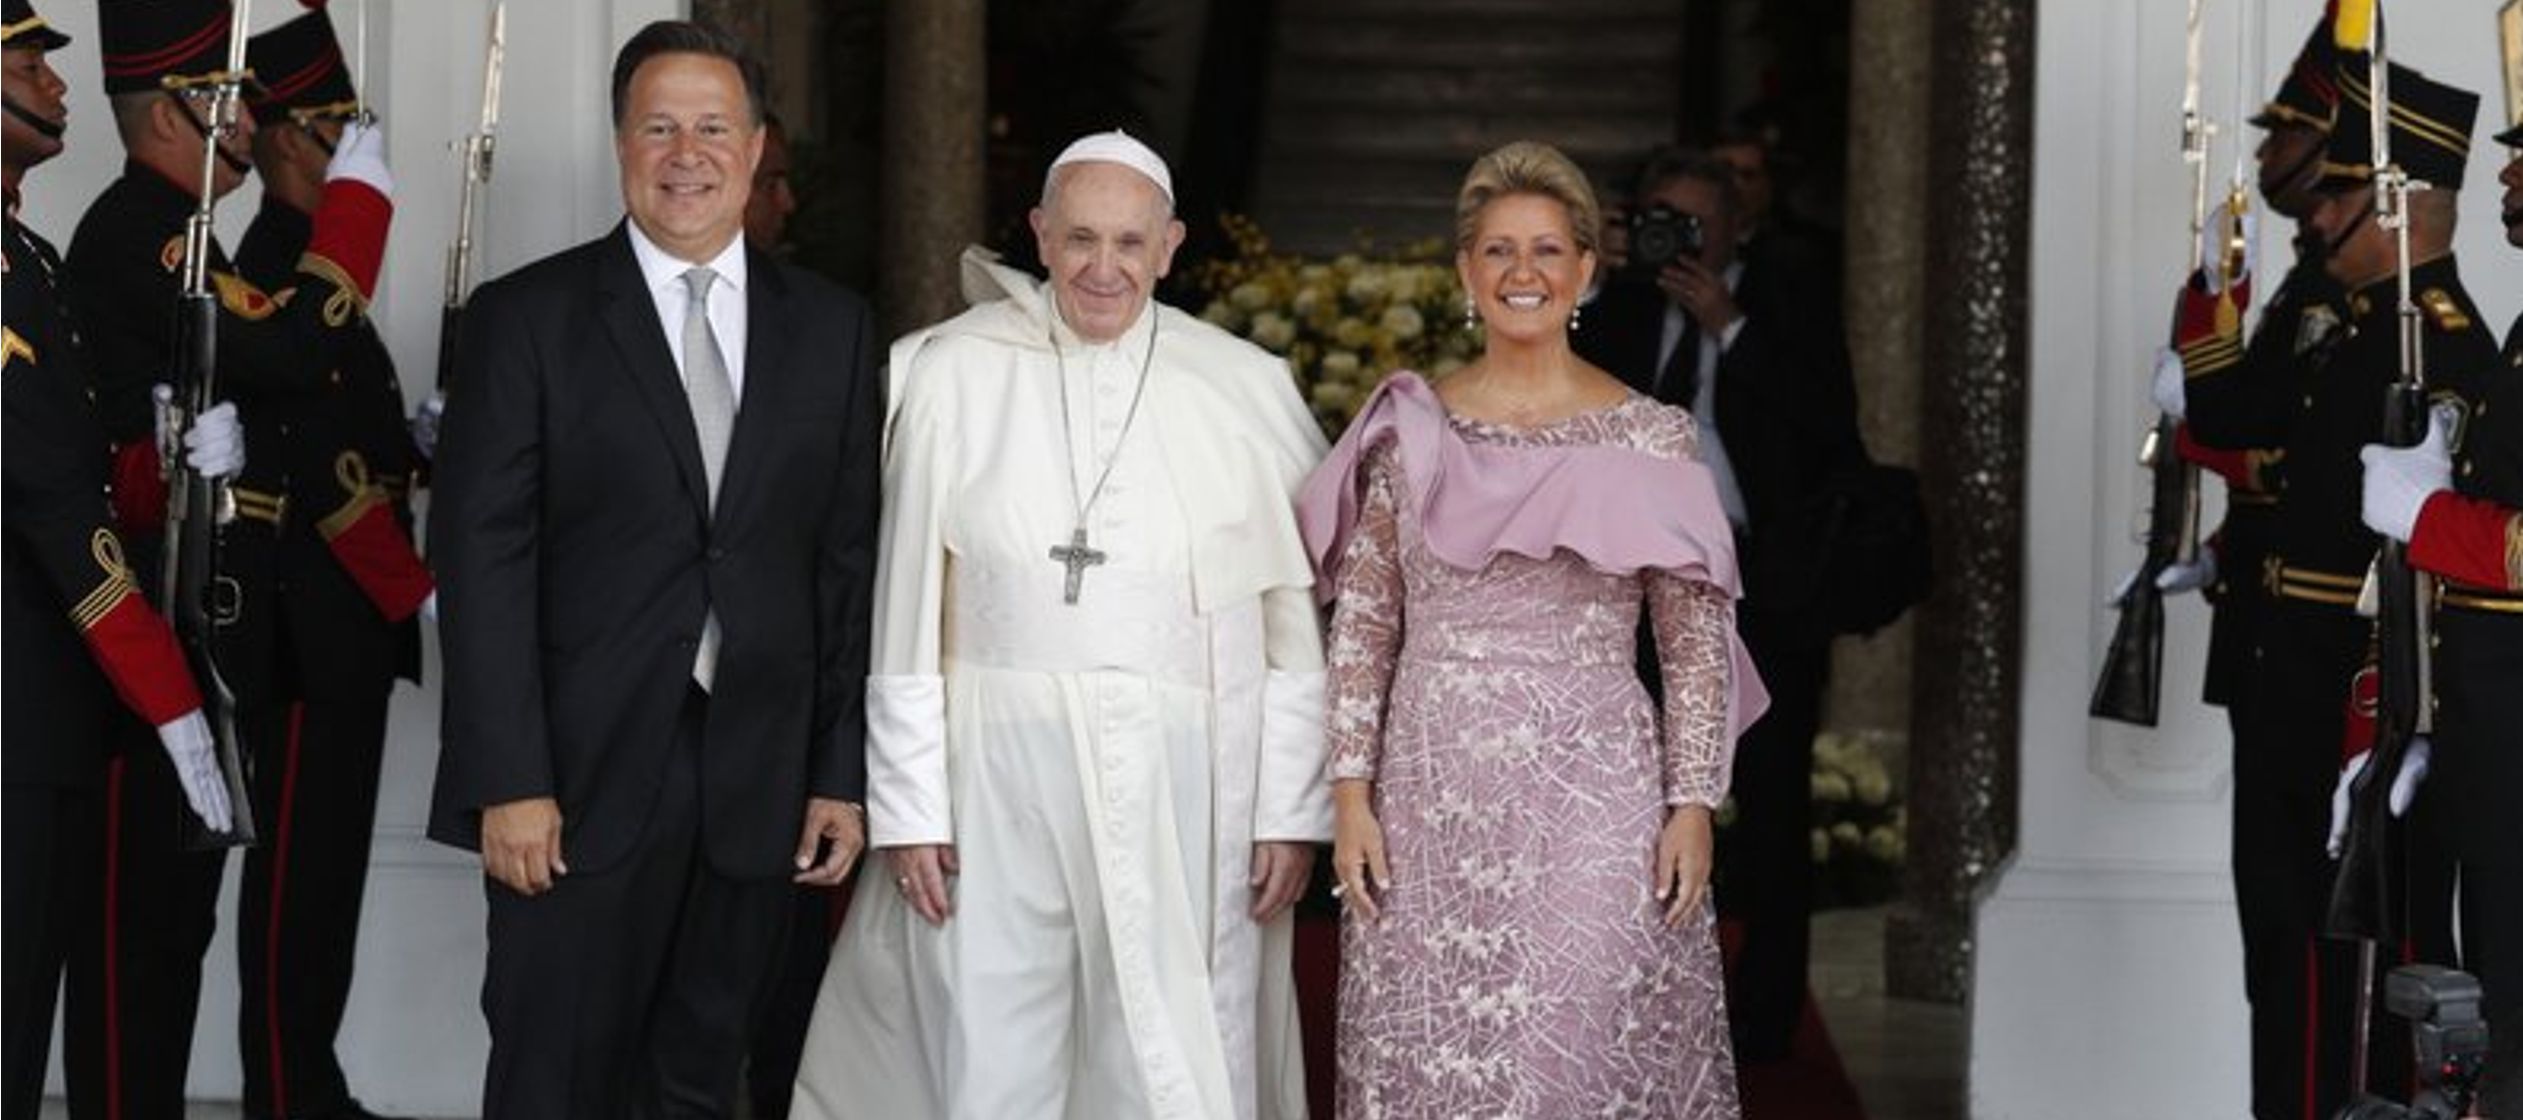 Últimas noticias sobre la visita del papa Francisco a Panamá en el marco de la...